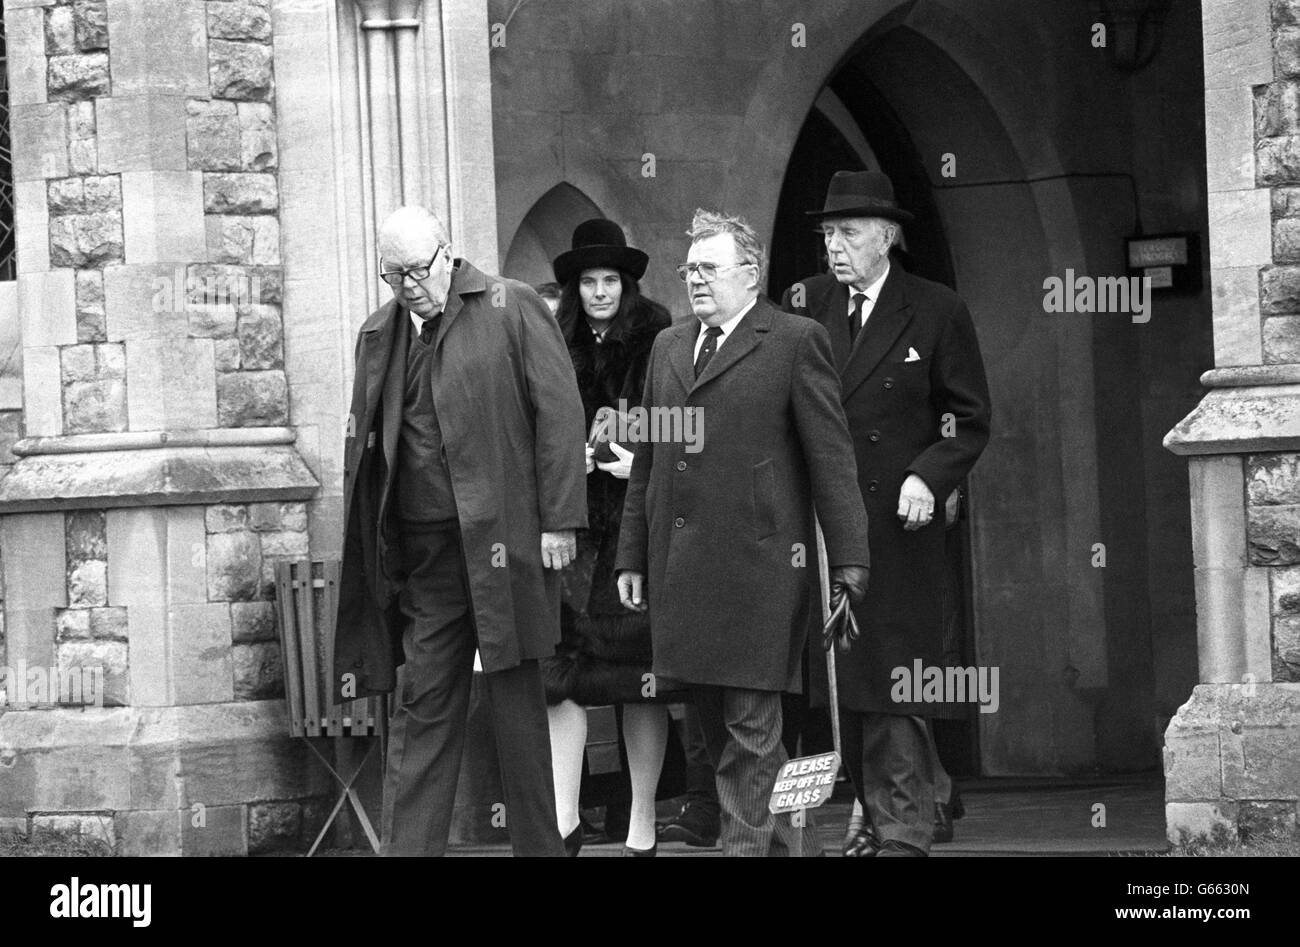 Trauernde verlassen die Kapelle im Putney Vale Crematorium nach dem Trauerdienst für Anthony Blunt, den ehemaligen königlichen Kunstberater, der als sowjetischer Spion entlarvt wurde. Stockfoto